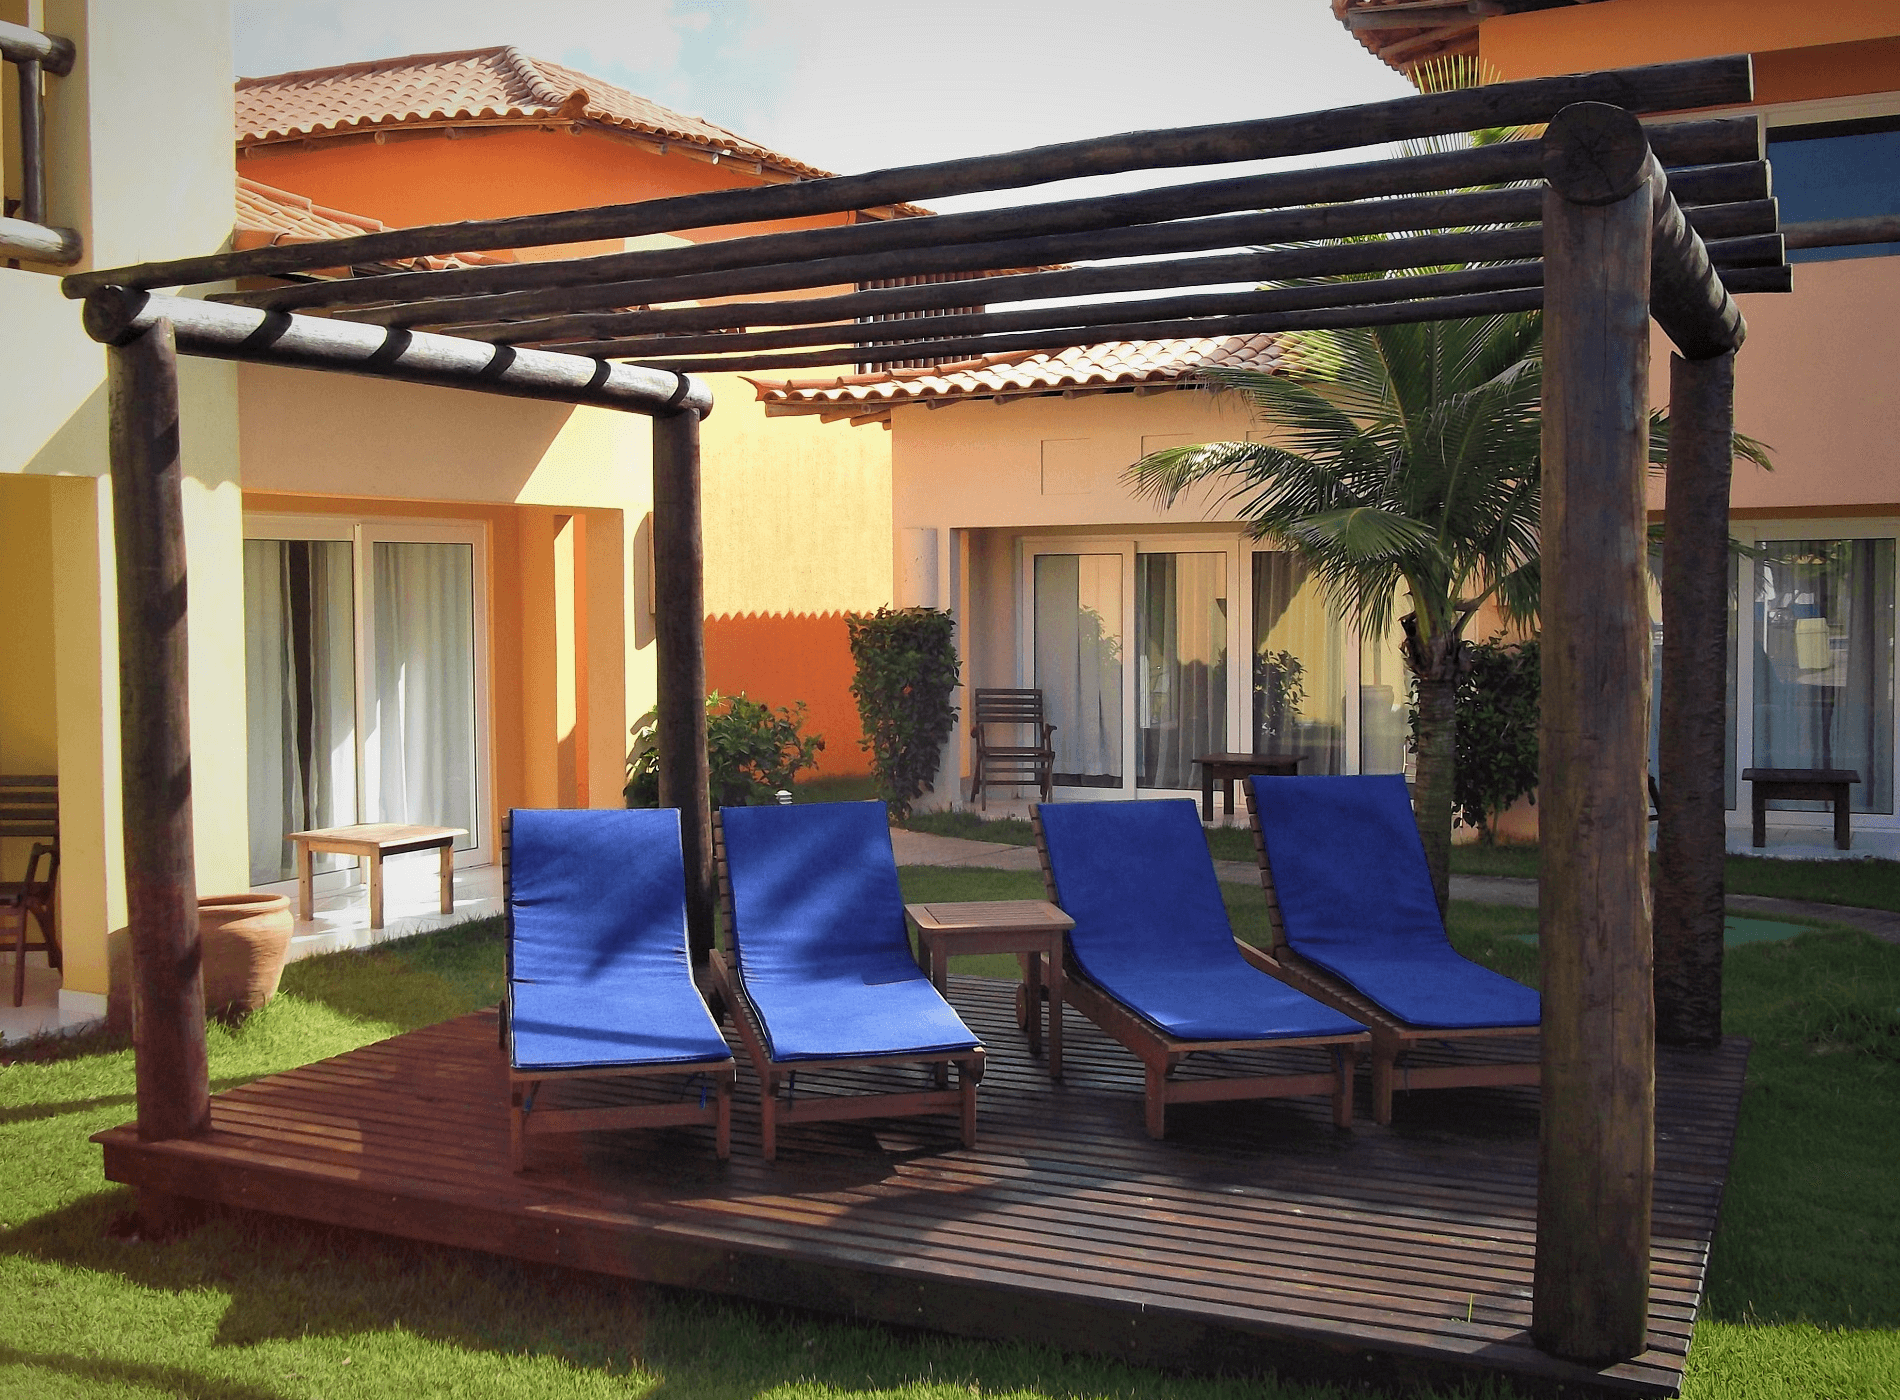 Na área das piscinas espaços para banho de sol foram criados com a instalação de novos pergolados com deck de madeira.